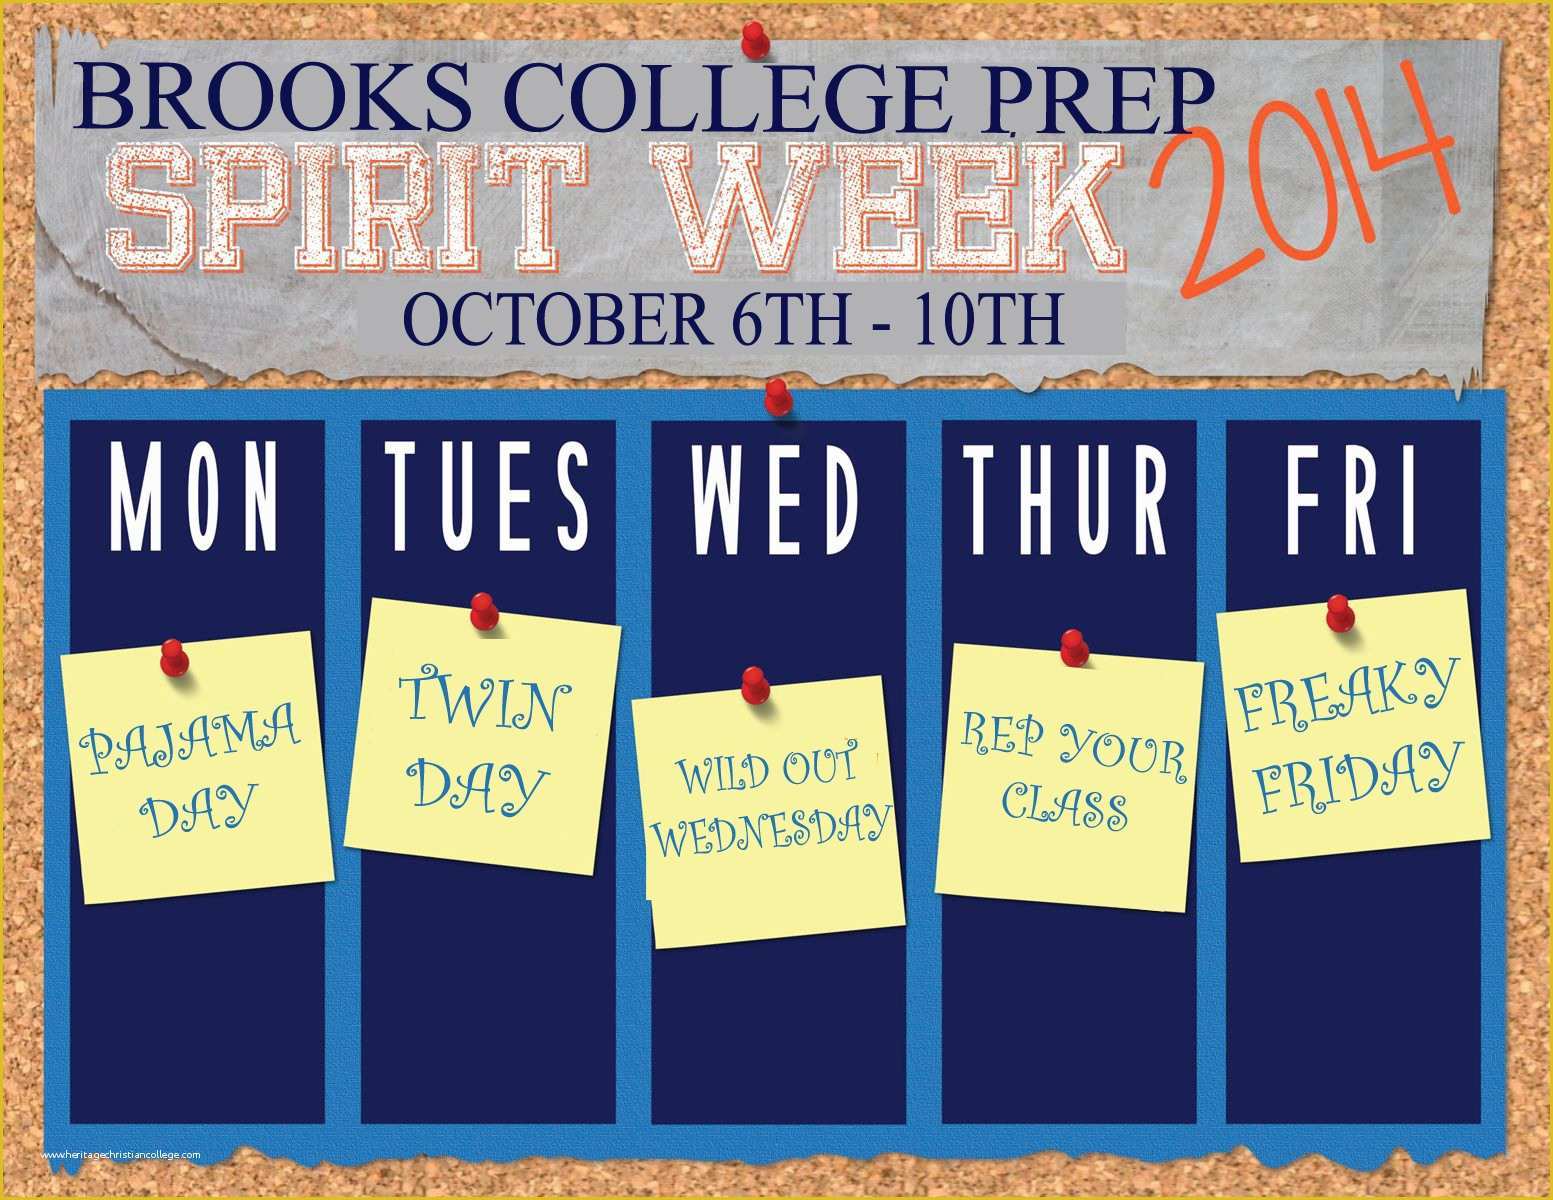 Free Spirit Week Flyer Template Of Gwendolyn Brooks College Prepatory Academy